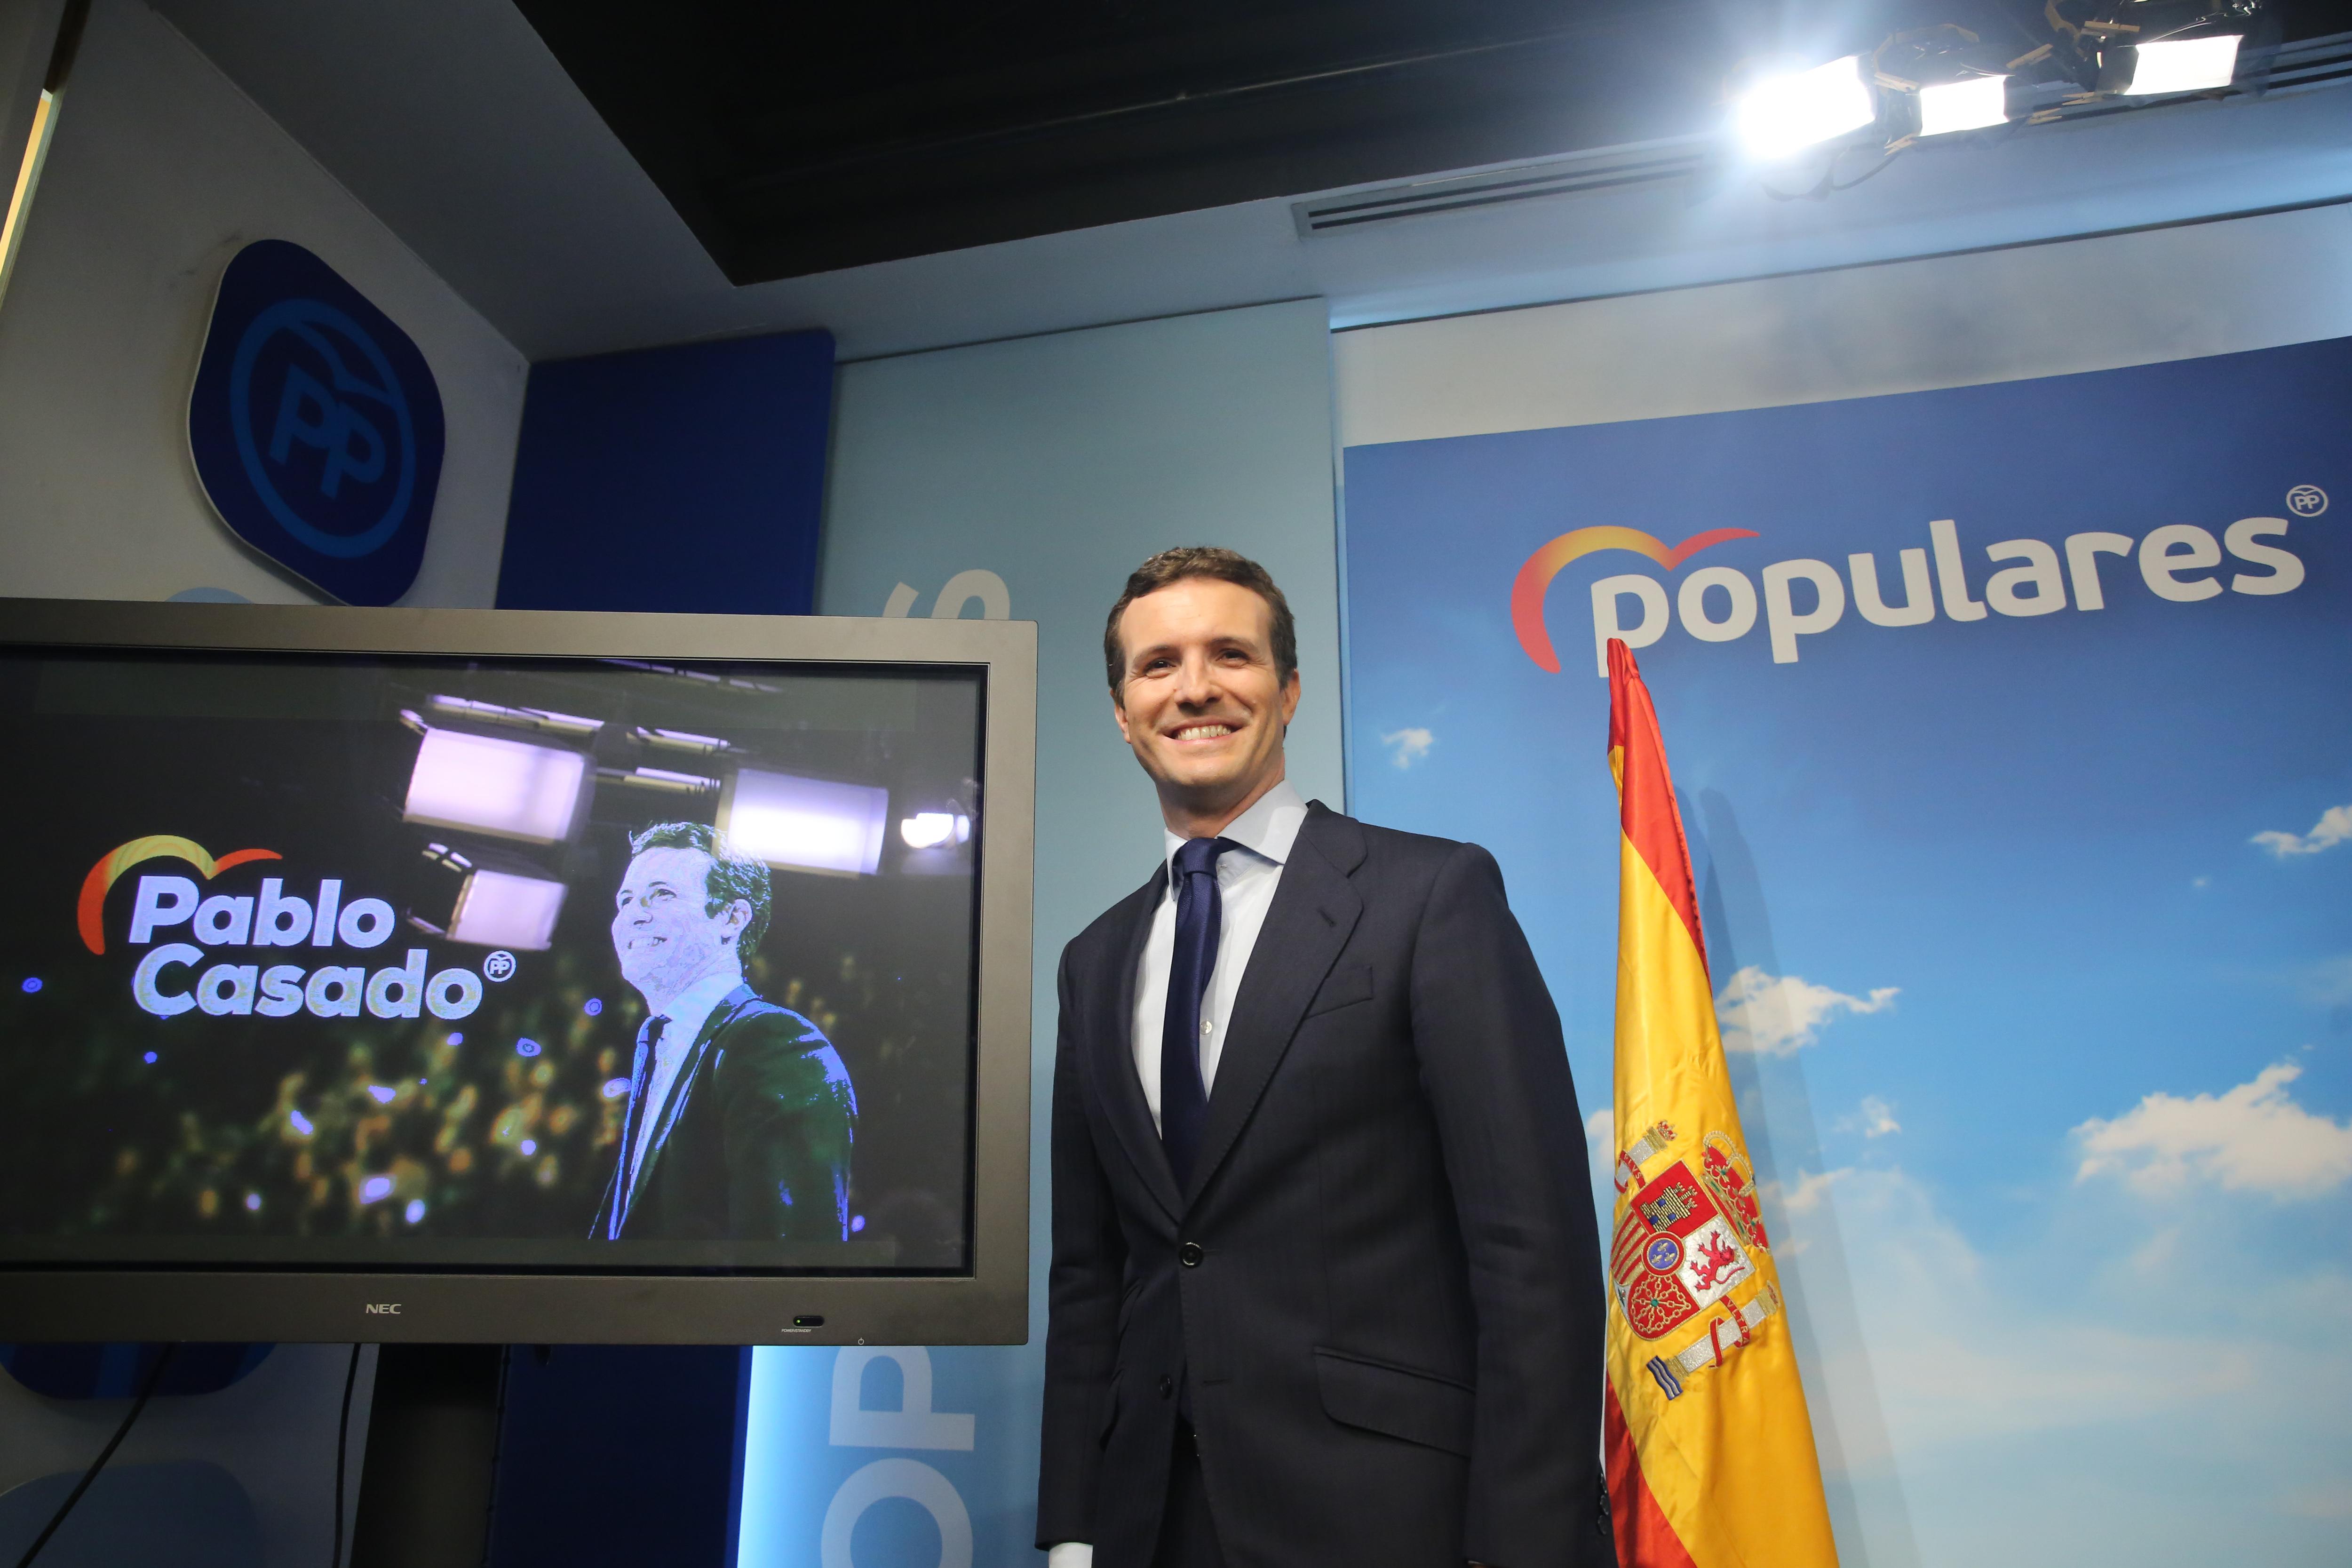 El presidente del Partido Popular Pablo Casado comparece en rueda de prensa tras el anuncio del Gobierno de la convocatoria de elecciones para el 28 de abril de 2019 